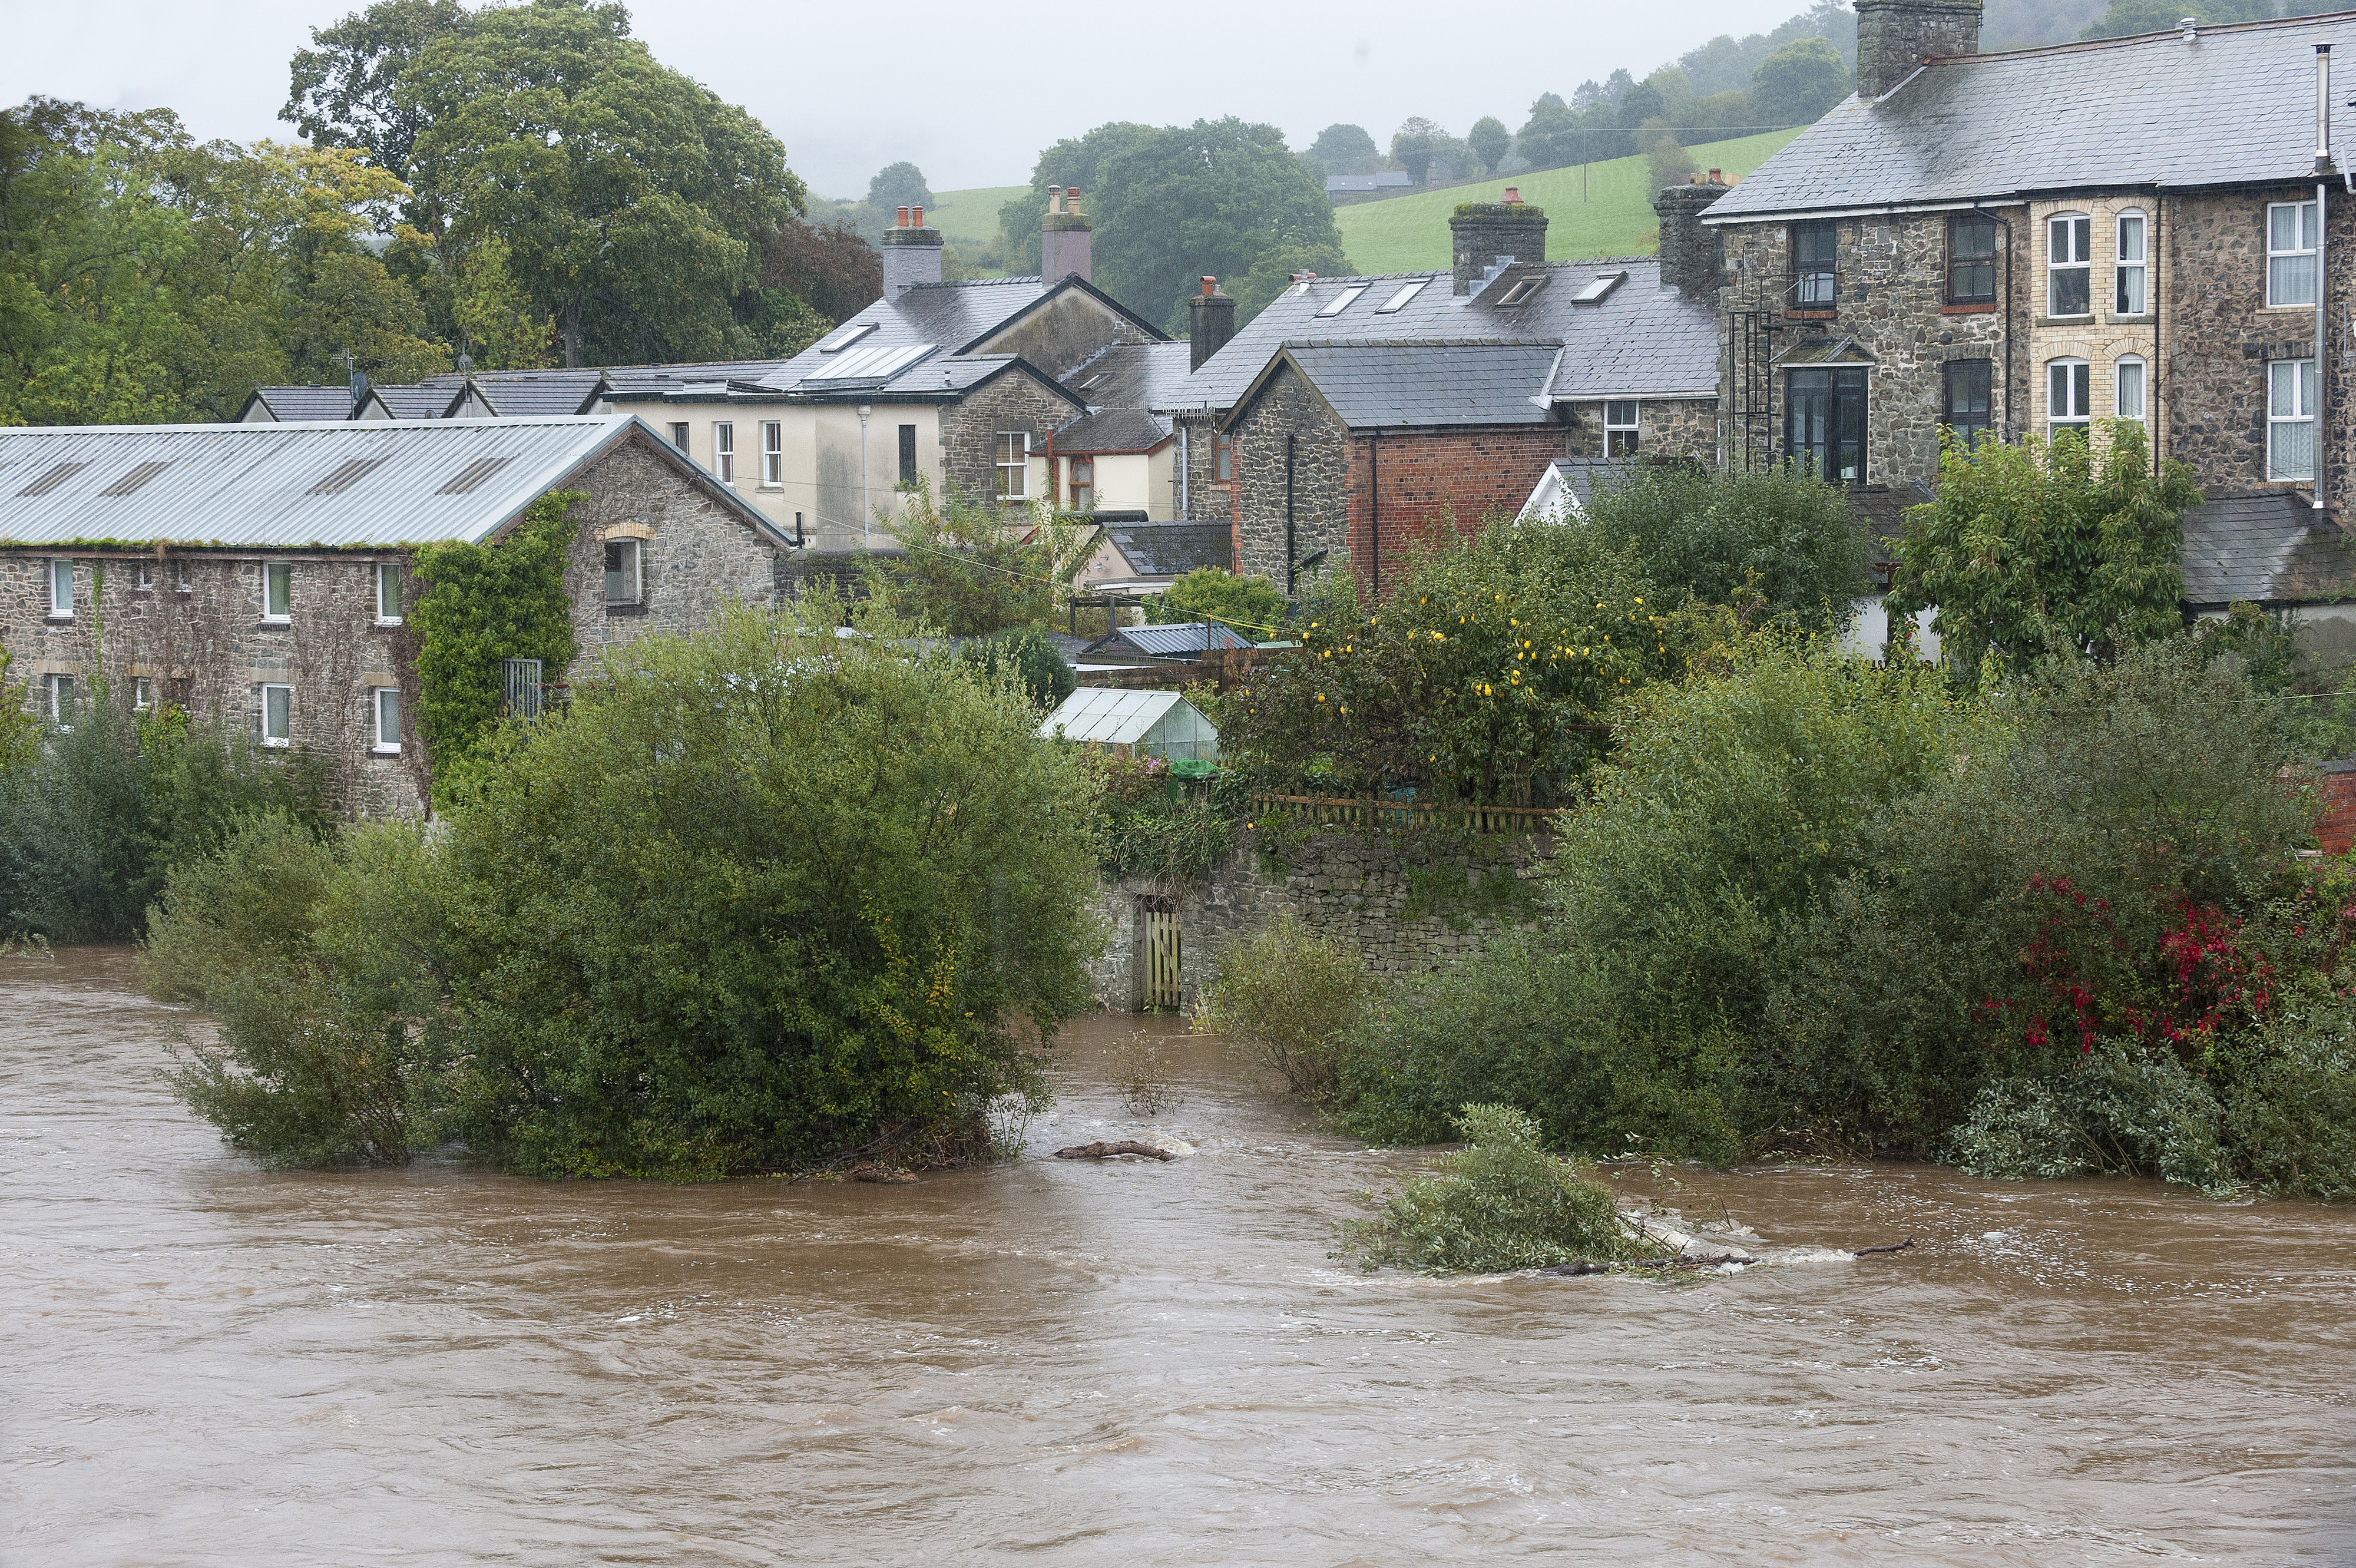 Die jüngsten Regenfälle führen dazu, dass der Fluss Wye in Powys, Wales, ansteigt und über die Ufer tritt